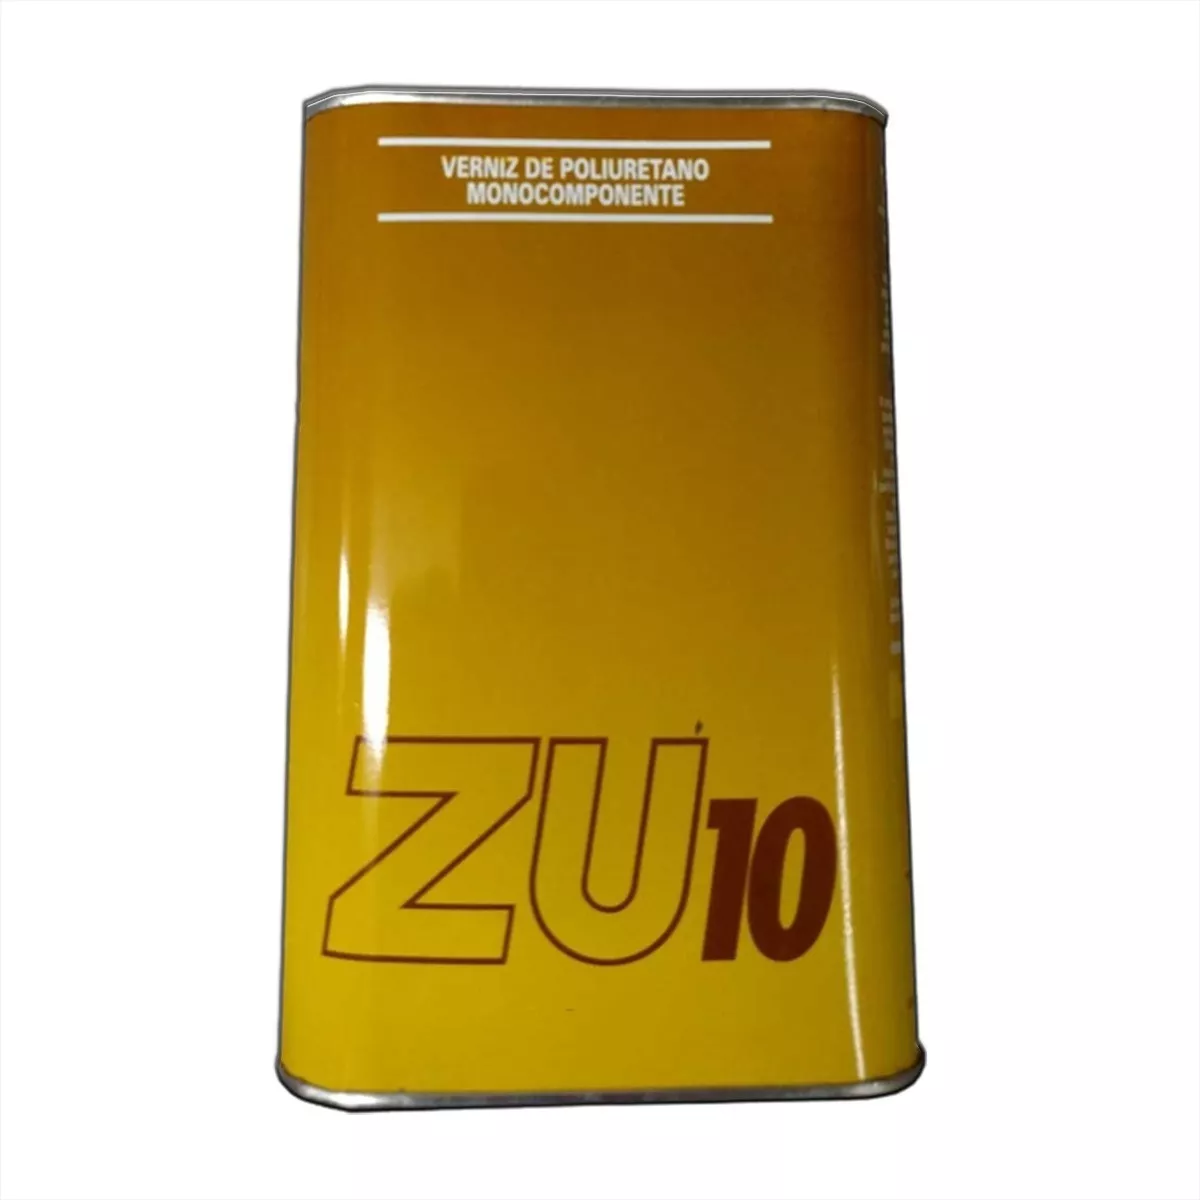 Verniz Poliuretano Zu-10 4,23l Efeito Espelhado Madeira